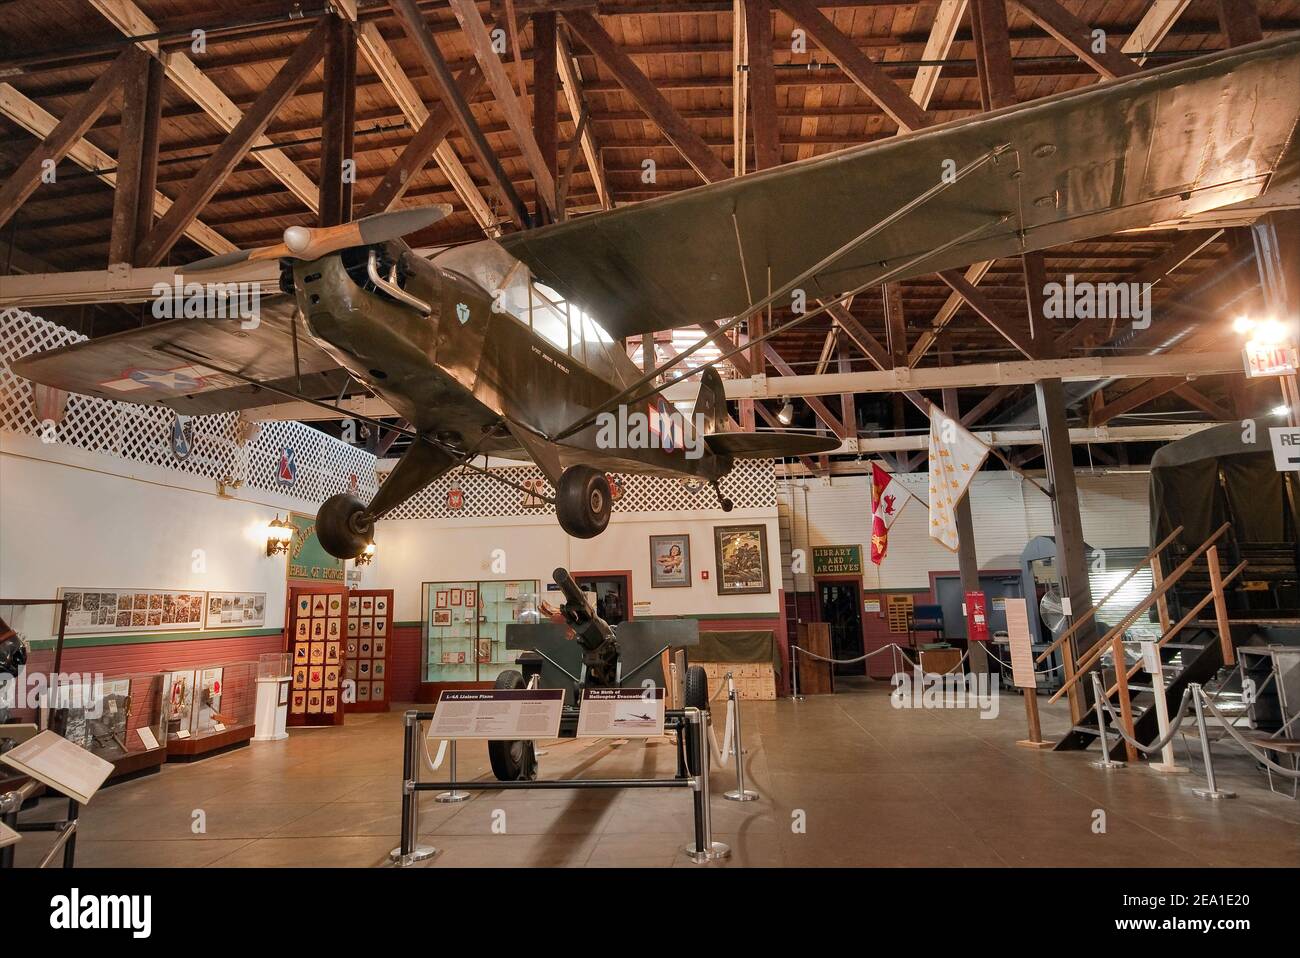 L4 Piper Cub, avion de liaison, Great Hall au Texas Military Forces Museum, Camp Mabry, Austin, Texas, États-Unis Banque D'Images